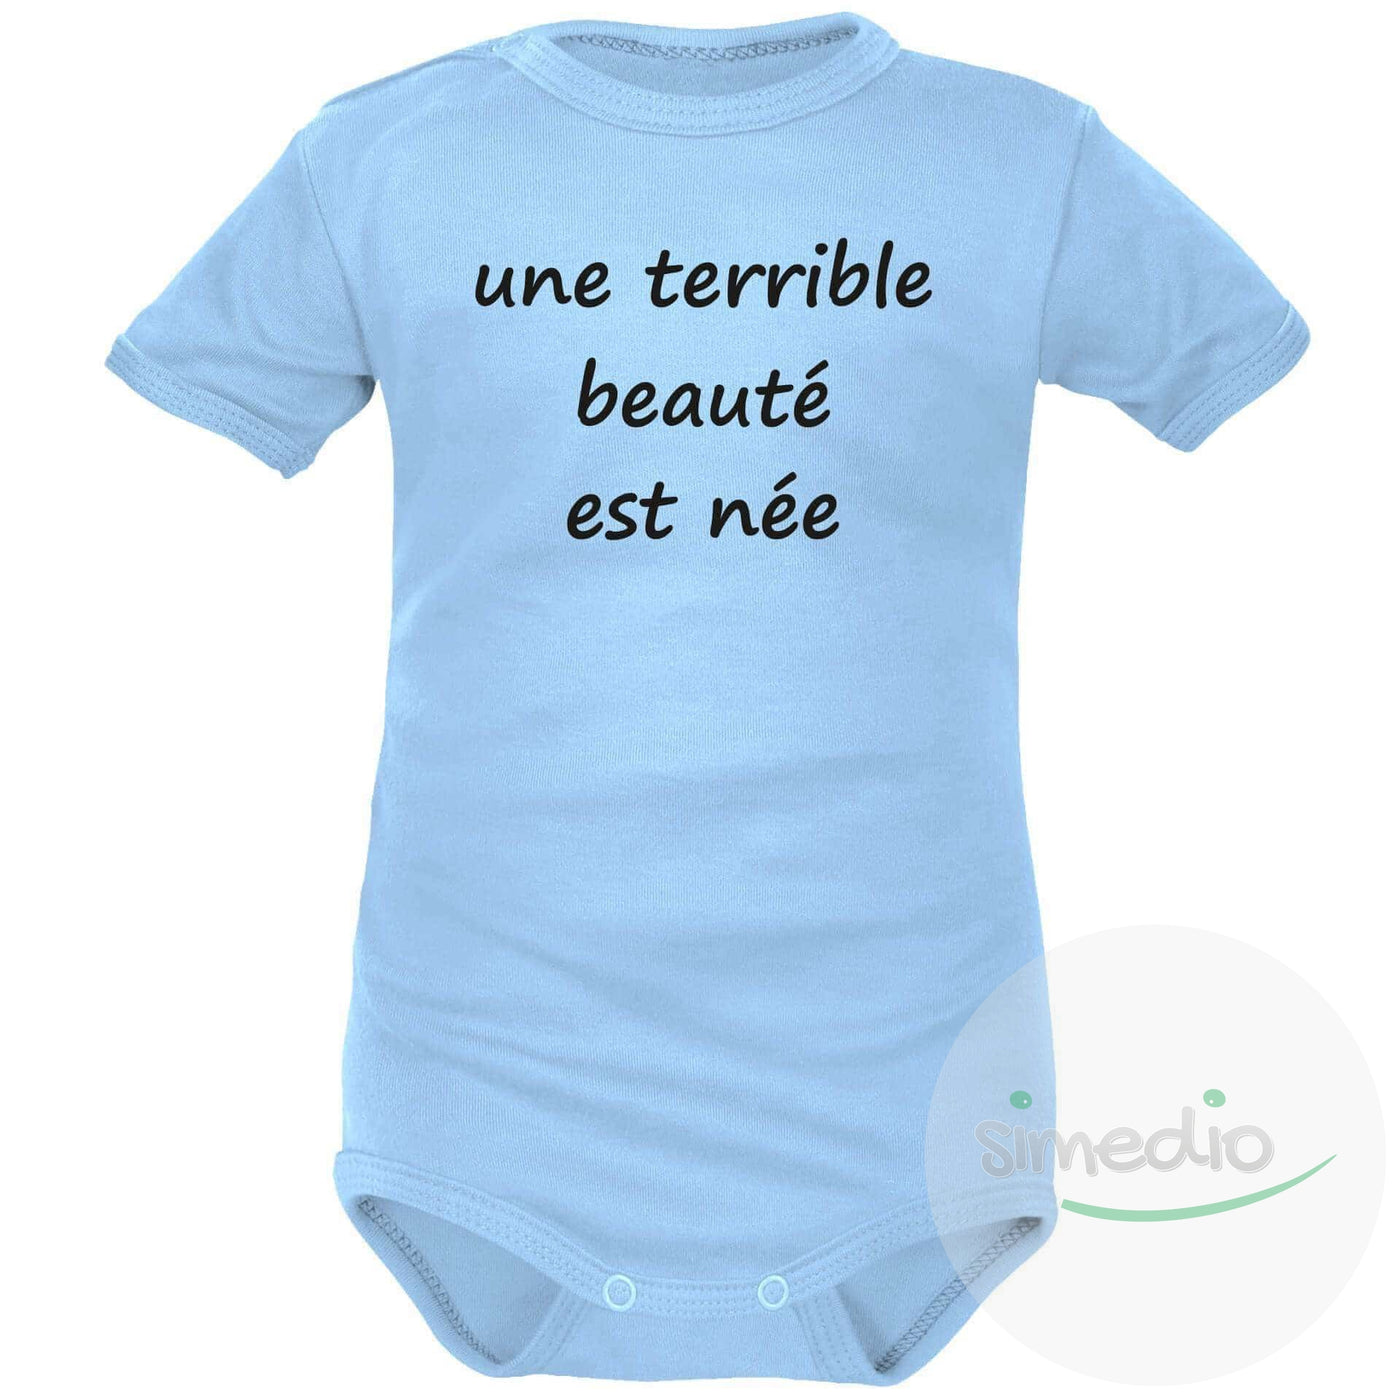 Body bébé message : une TERRIBLE BEAUTÉ est née, Bleu, Courtes, 0-1 mois - SiMEDIO